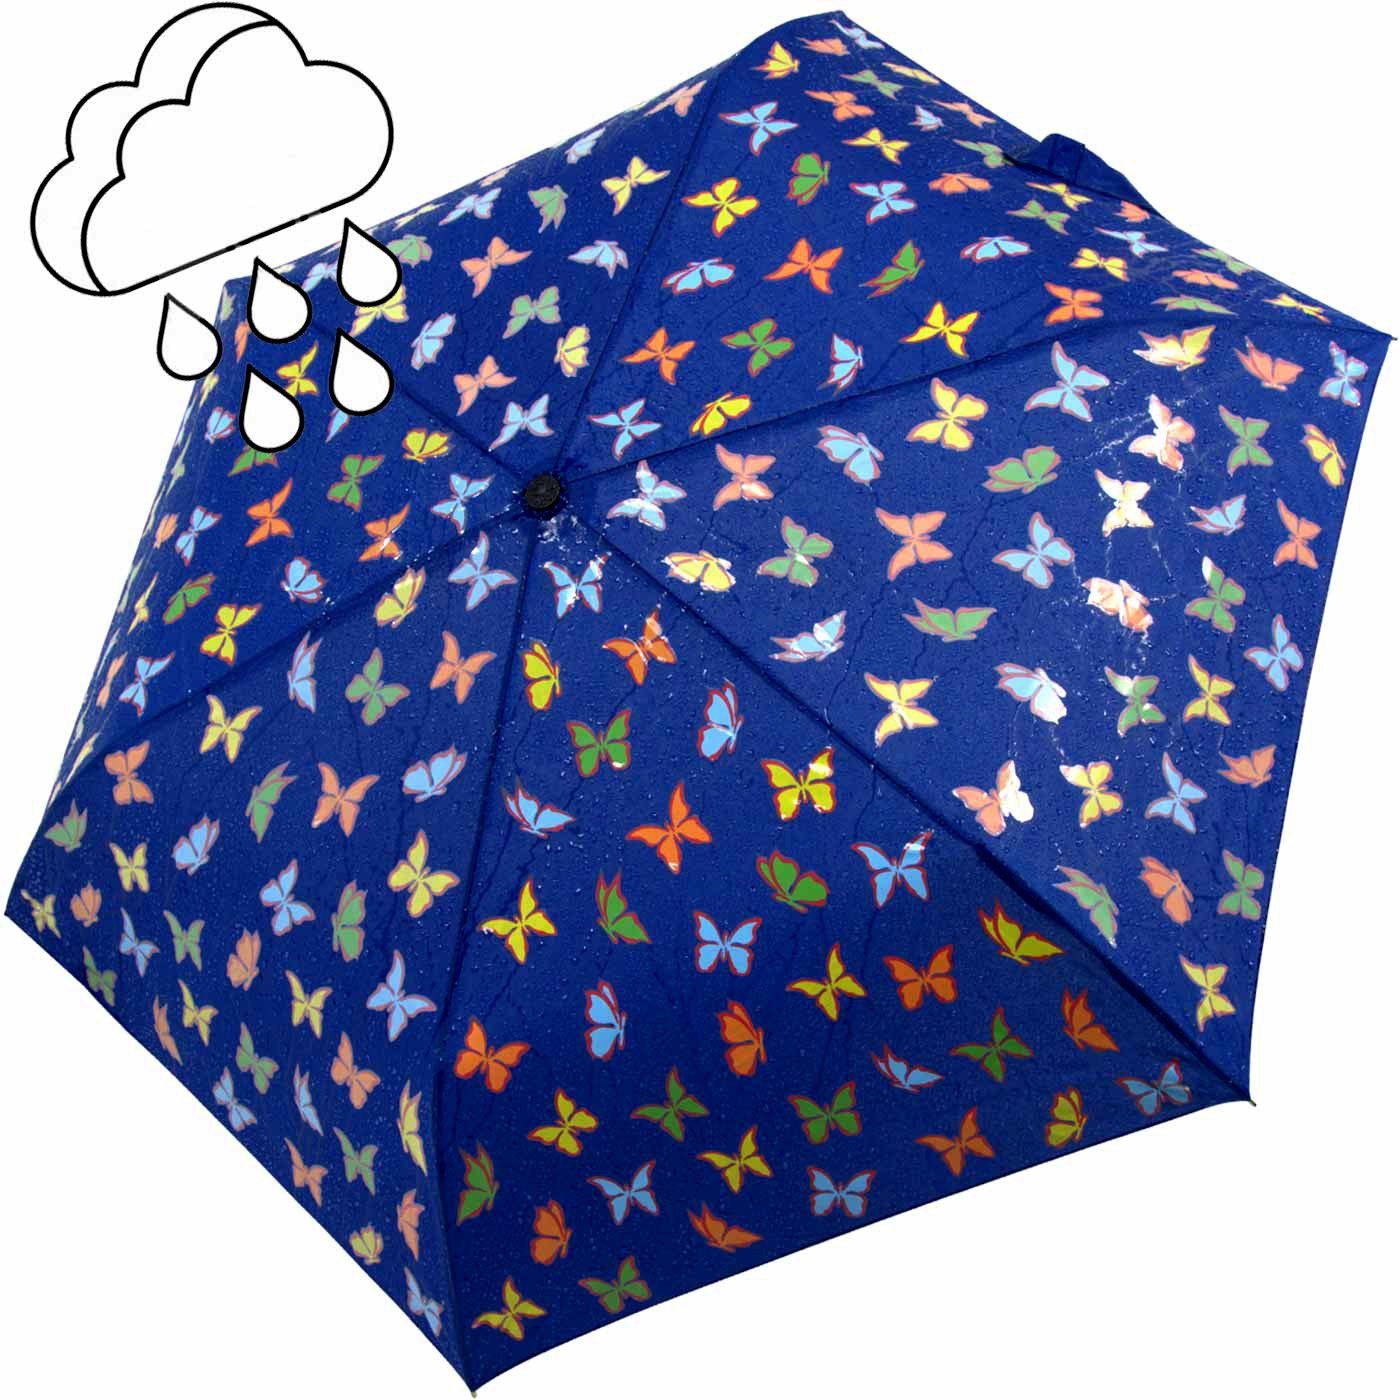 Nässe Wet Taschenregenschirm - Print Motiv, mit Schmetterlinge iX-brella Farbänderung bei Kinderschirm Mini iX-brella